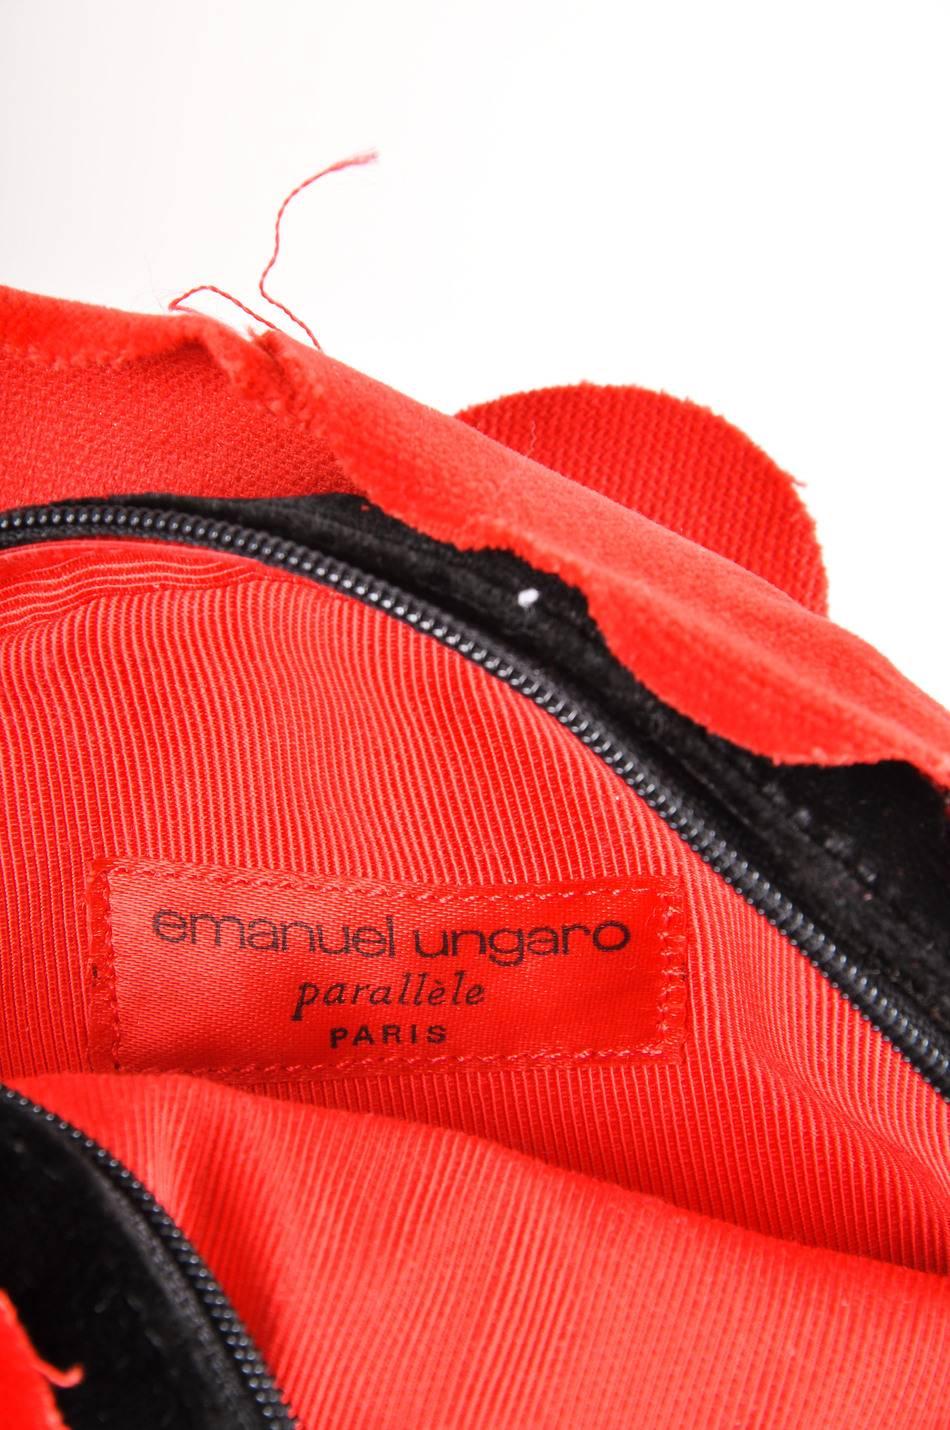 ungaro backpack